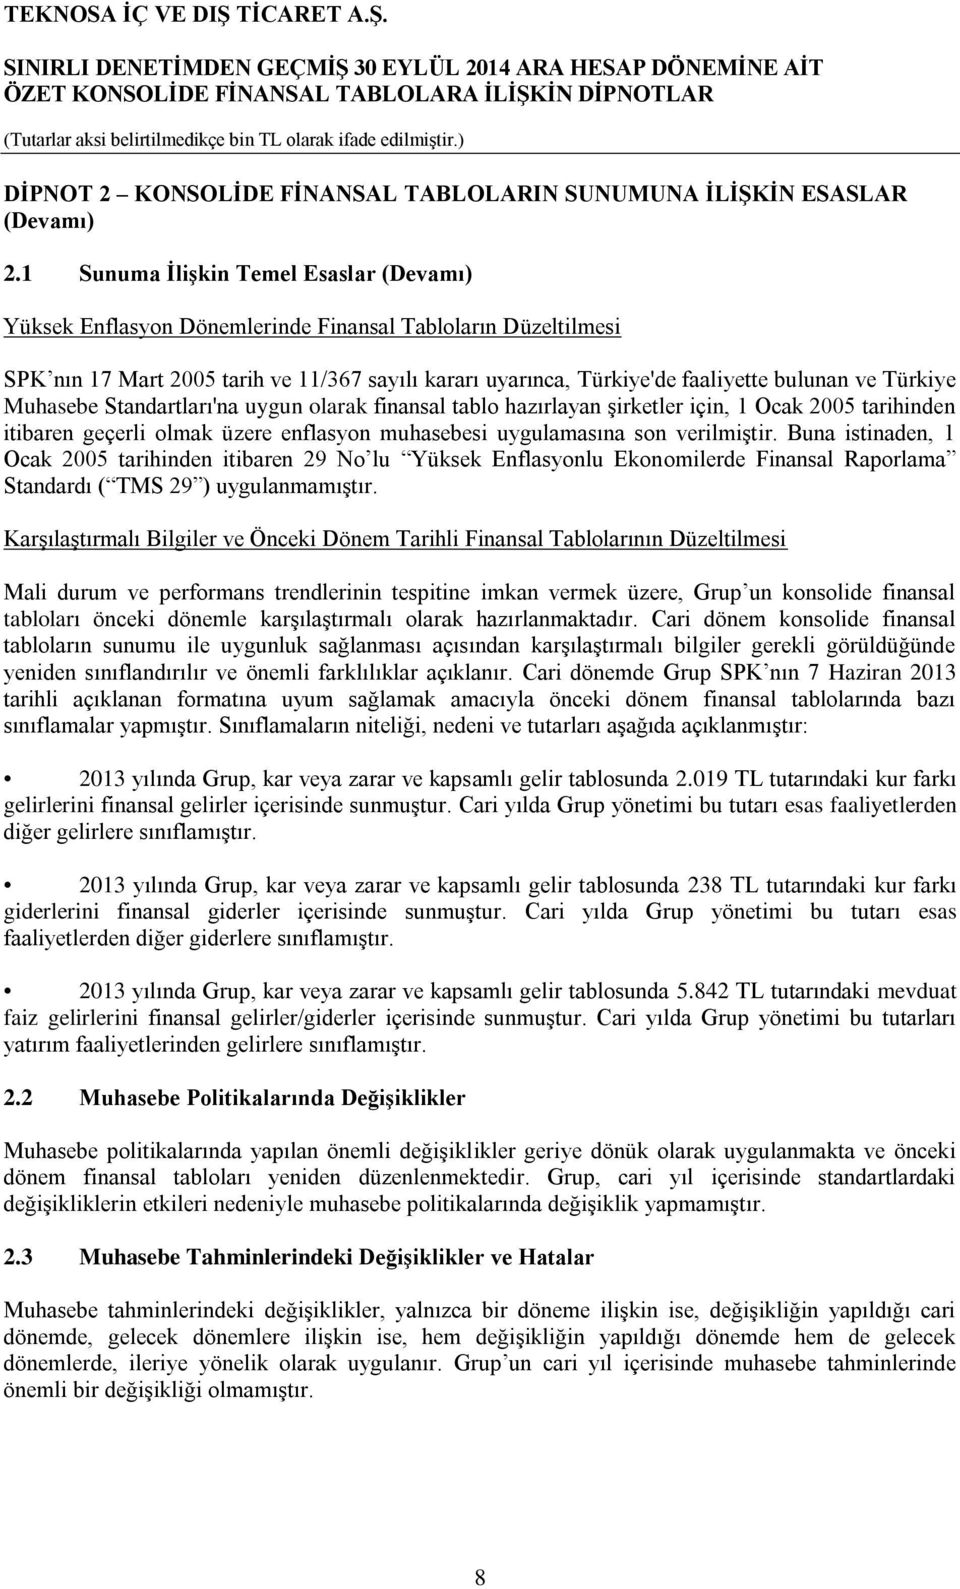 Türkiye Muhasebe Standartları'na uygun olarak finansal tablo hazırlayan şirketler için, 1 Ocak 2005 tarihinden itibaren geçerli olmak üzere enflasyon muhasebesi uygulamasına son verilmiştir.